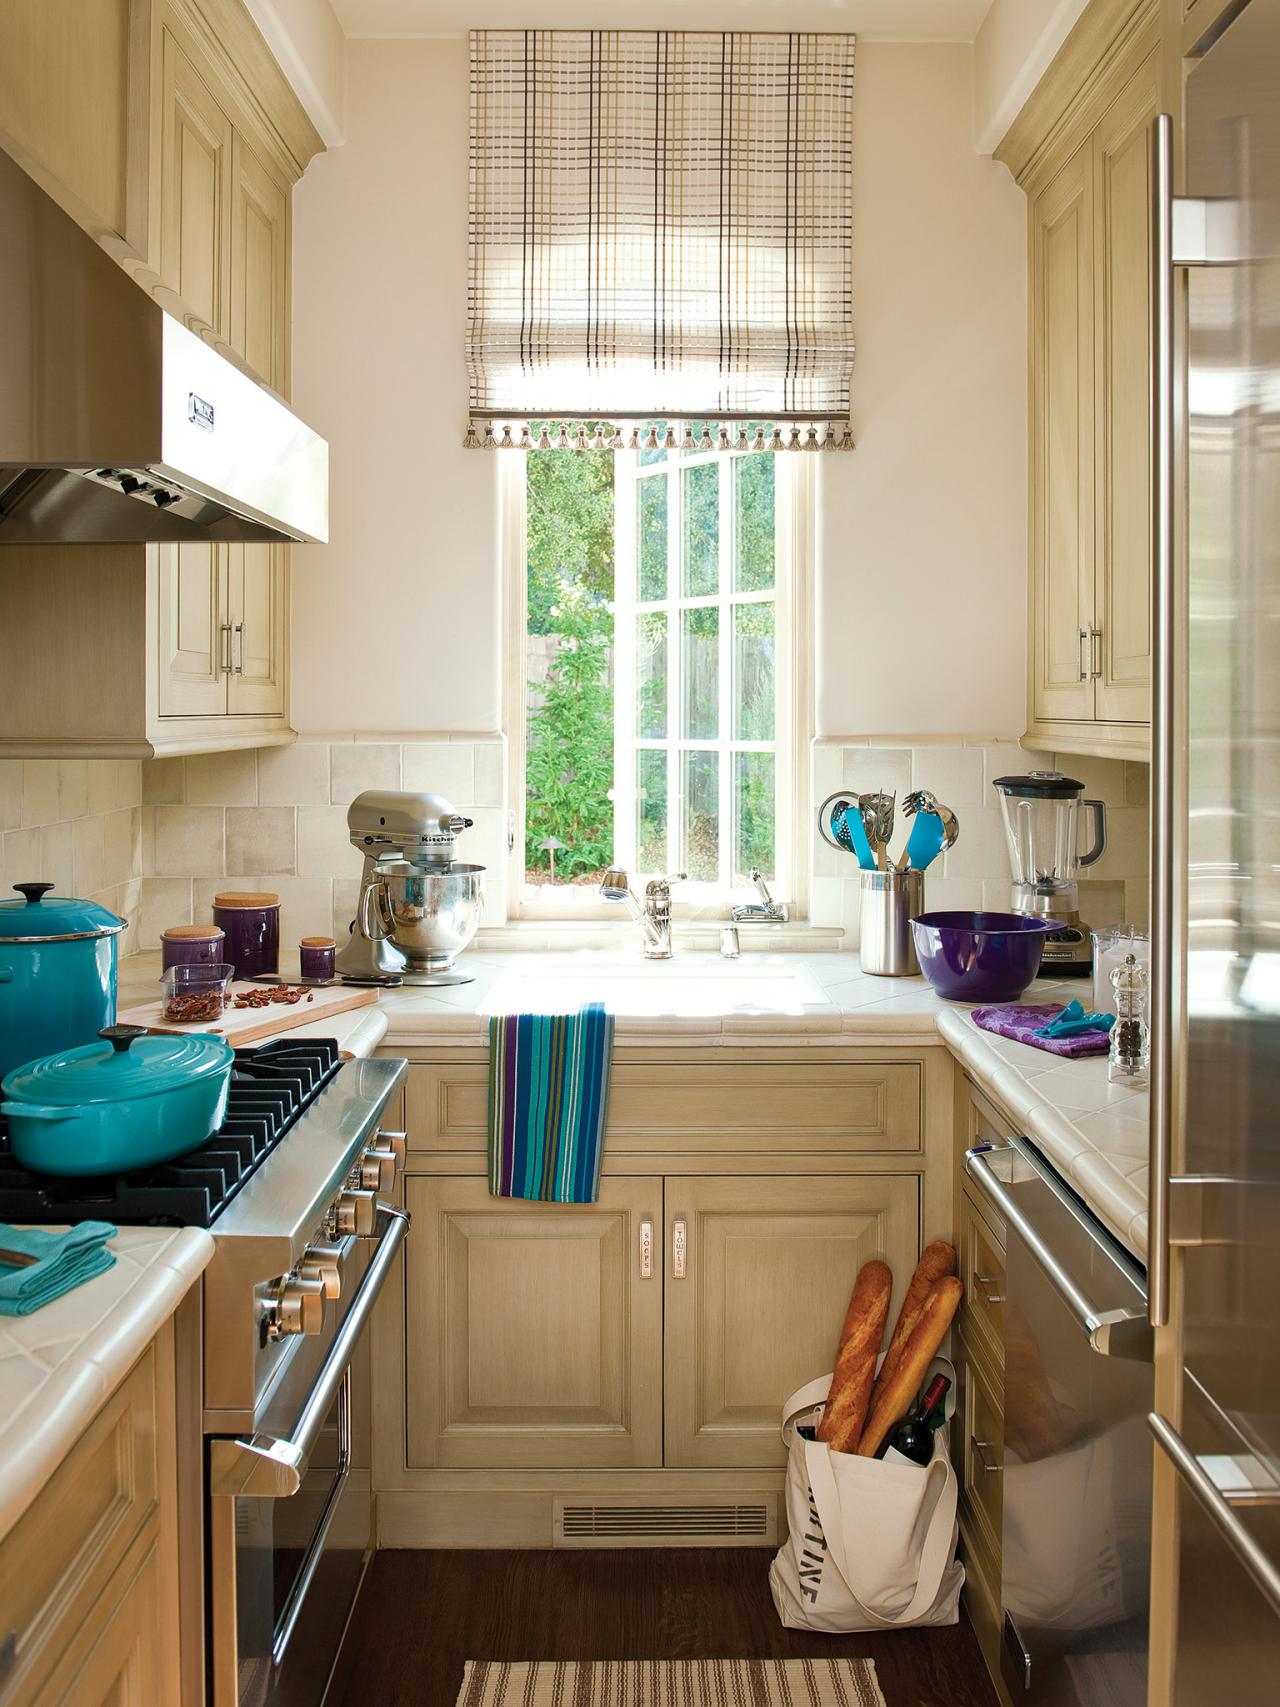 25 Most Popular Kitchen Layout Design Ideas - Decoration Love